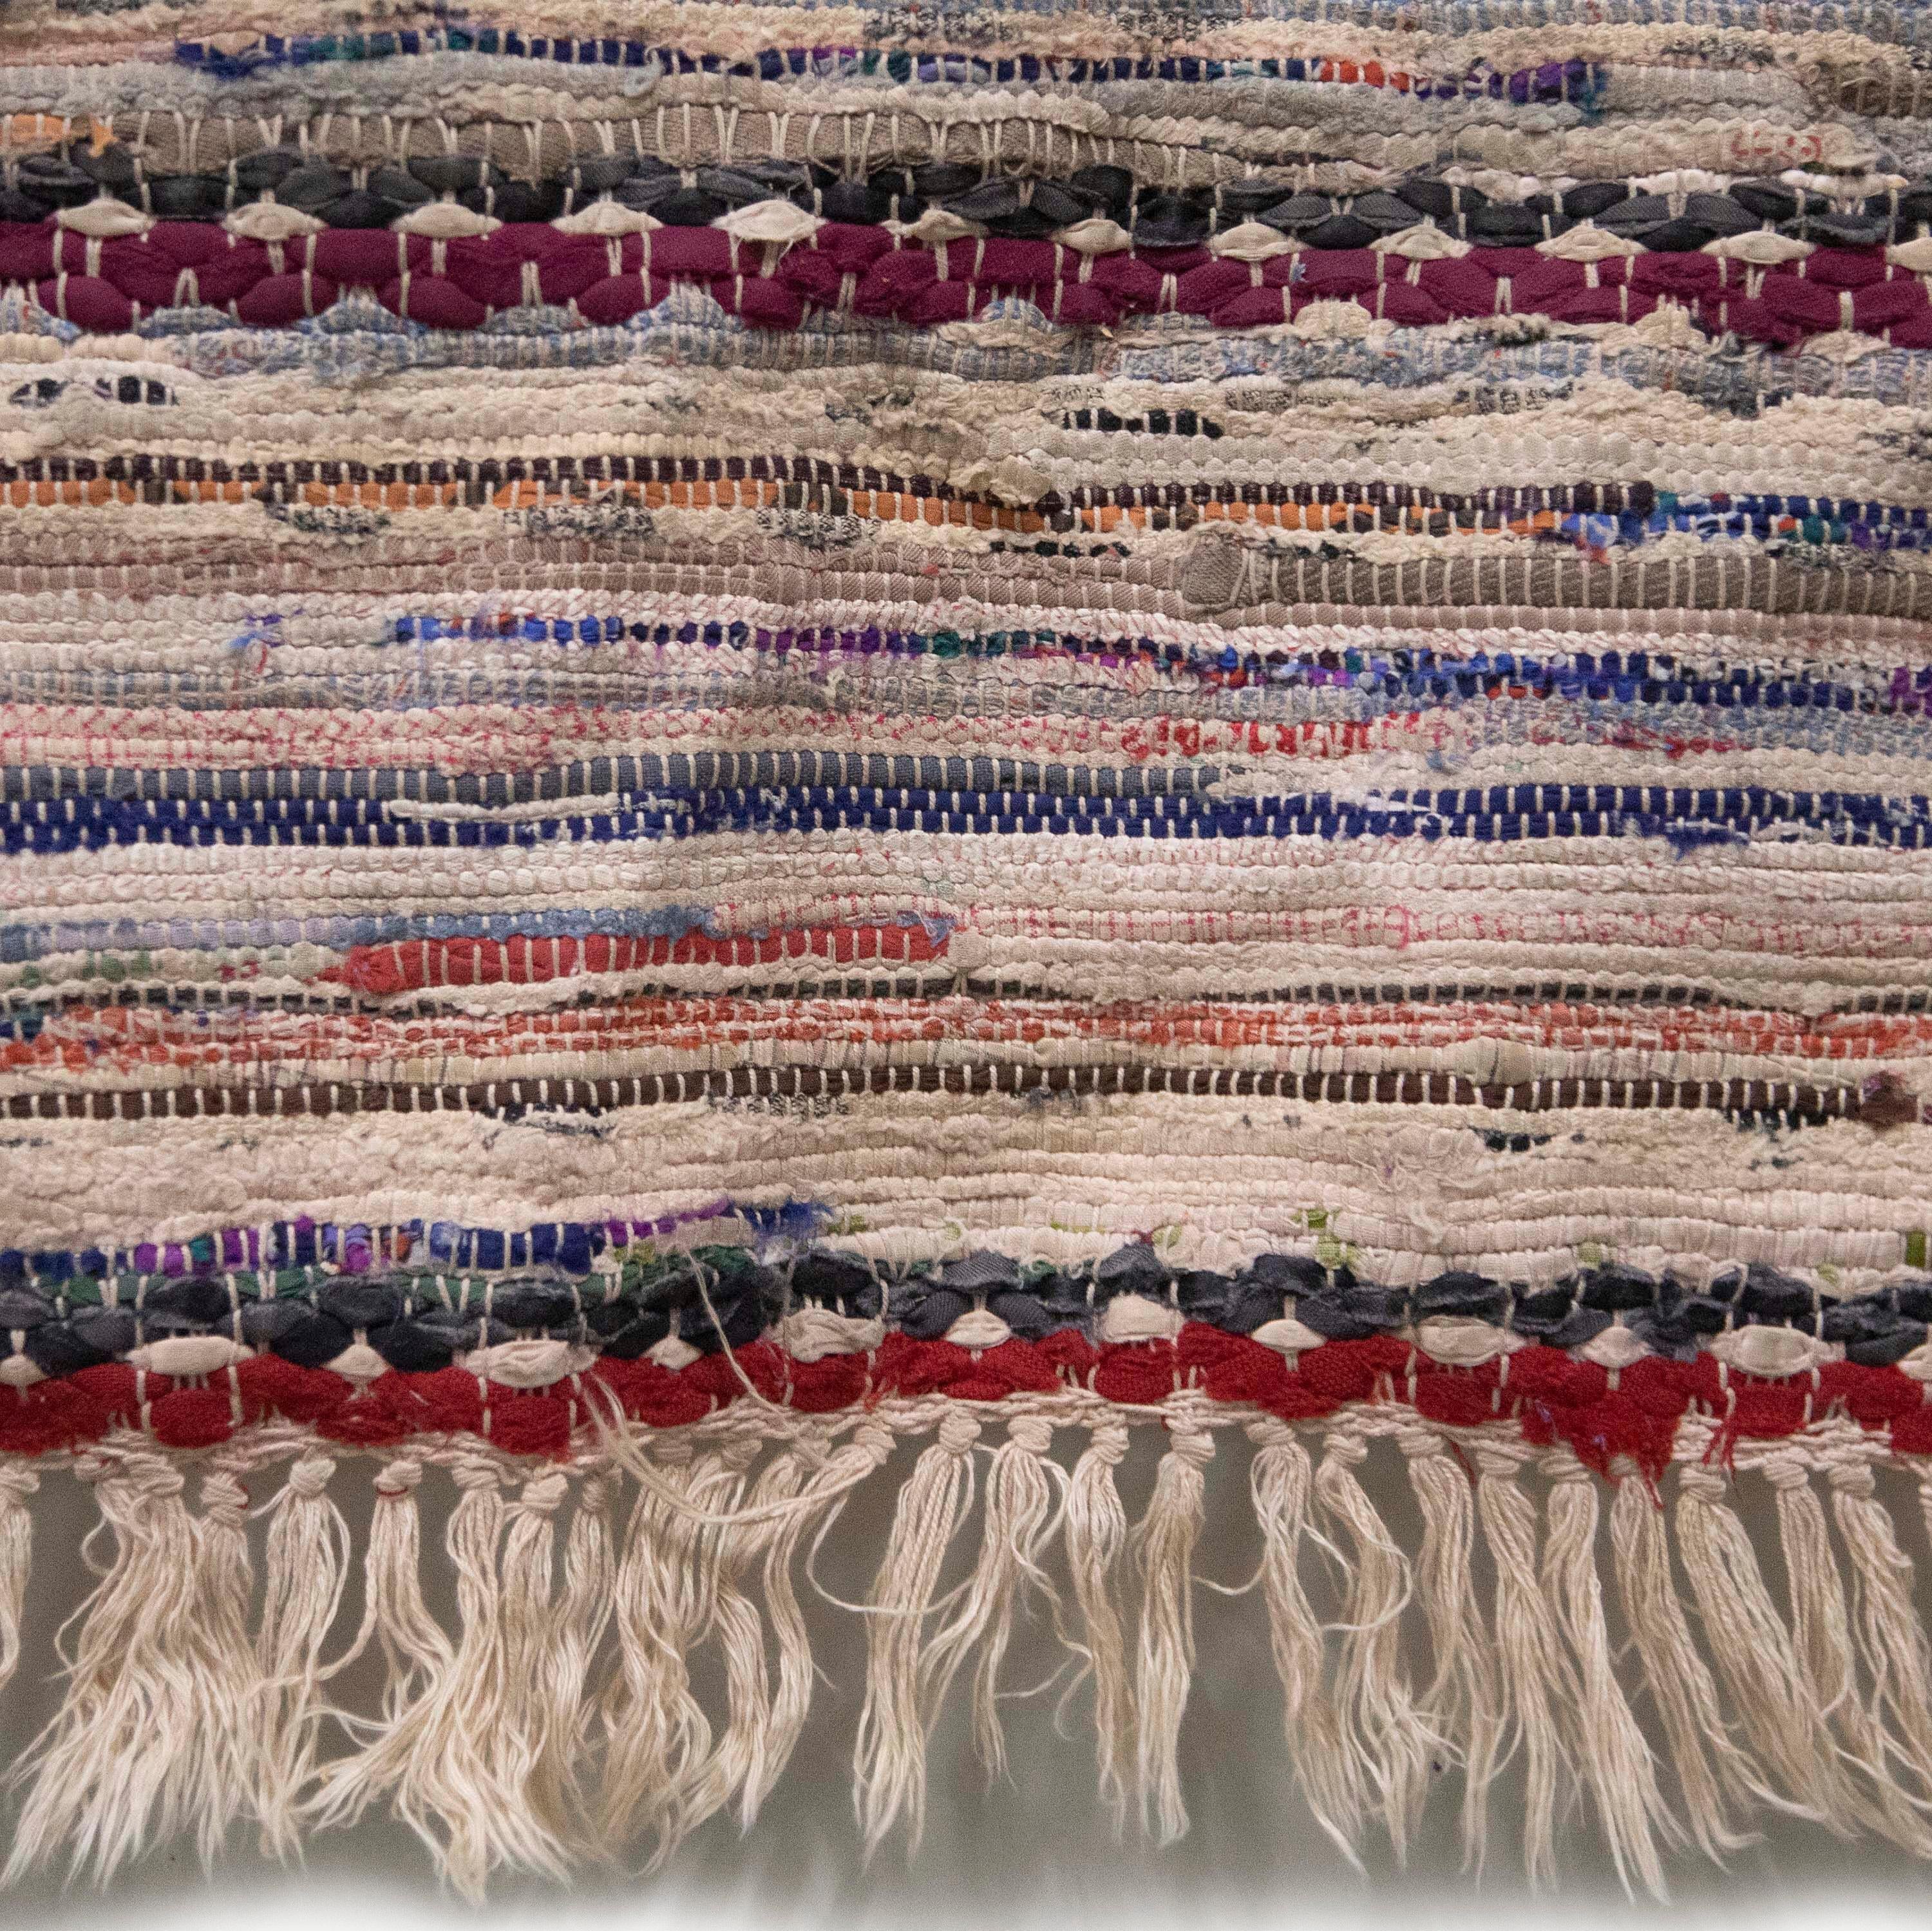 Tapis de chiffon suédois du 20e siècle.   Il présente un motif à rayures dans des tons de rose, rouge et bleu.   Ce tapis peut être lavé en machine à 30 degrés.
RT6024585